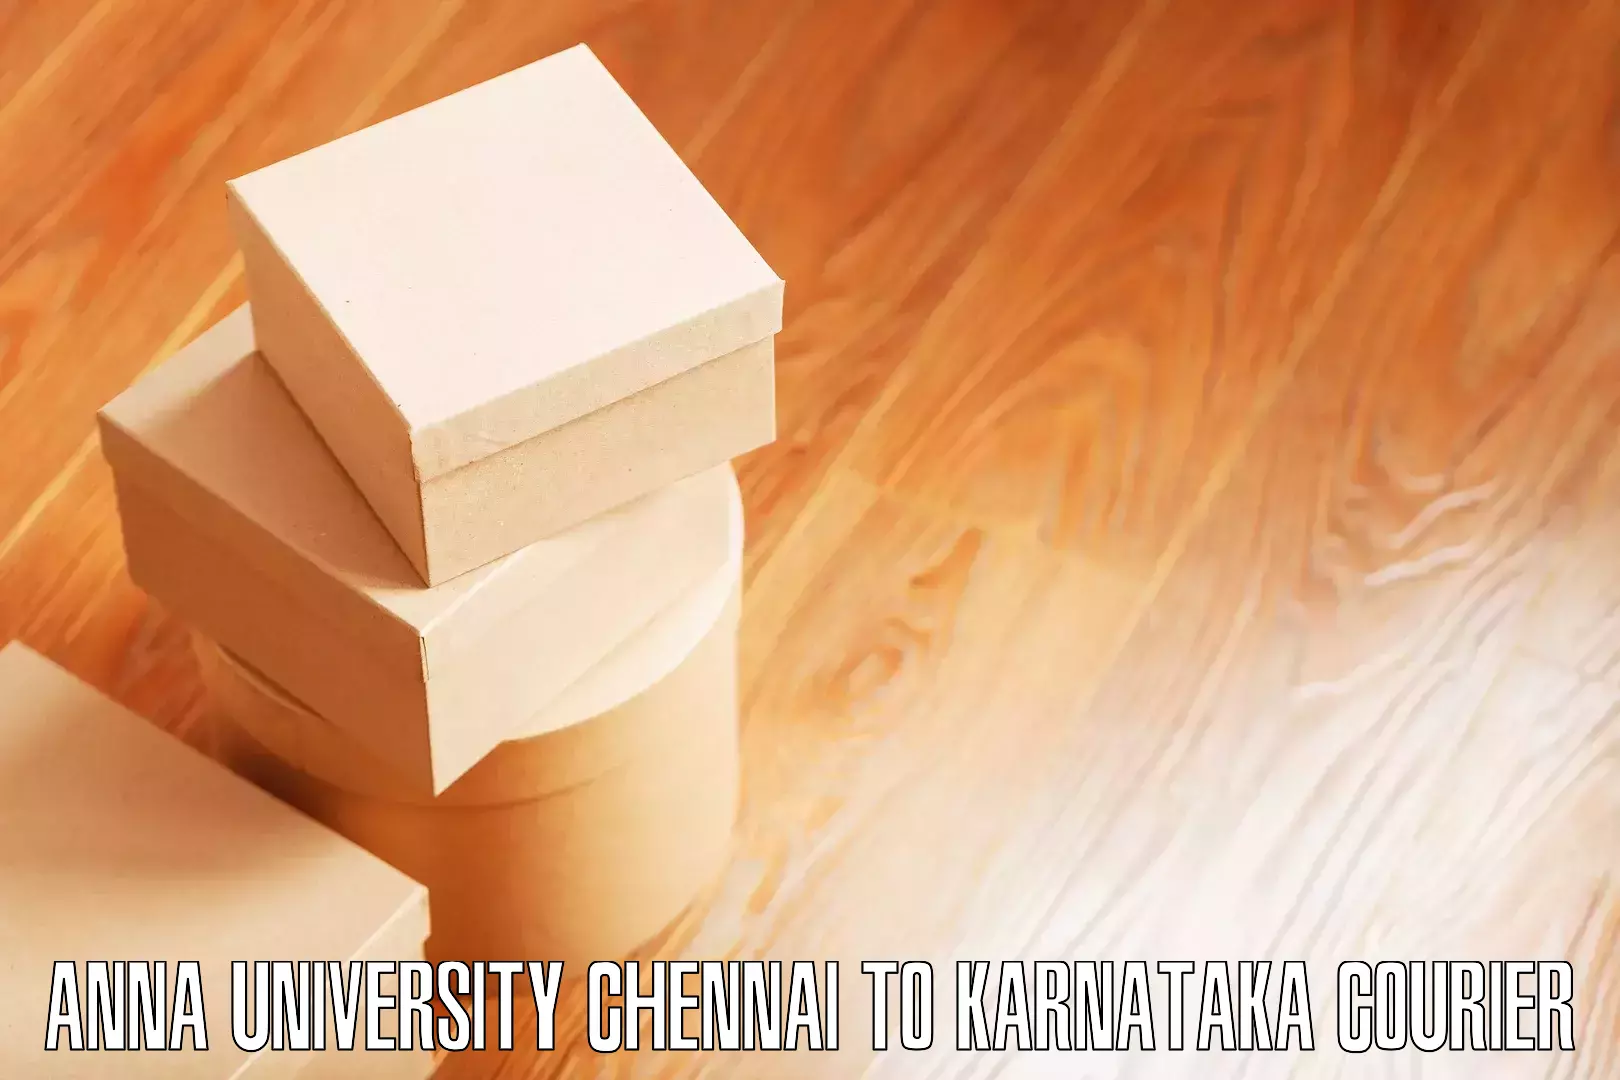 Safe home moving Anna University Chennai to Bethamangala